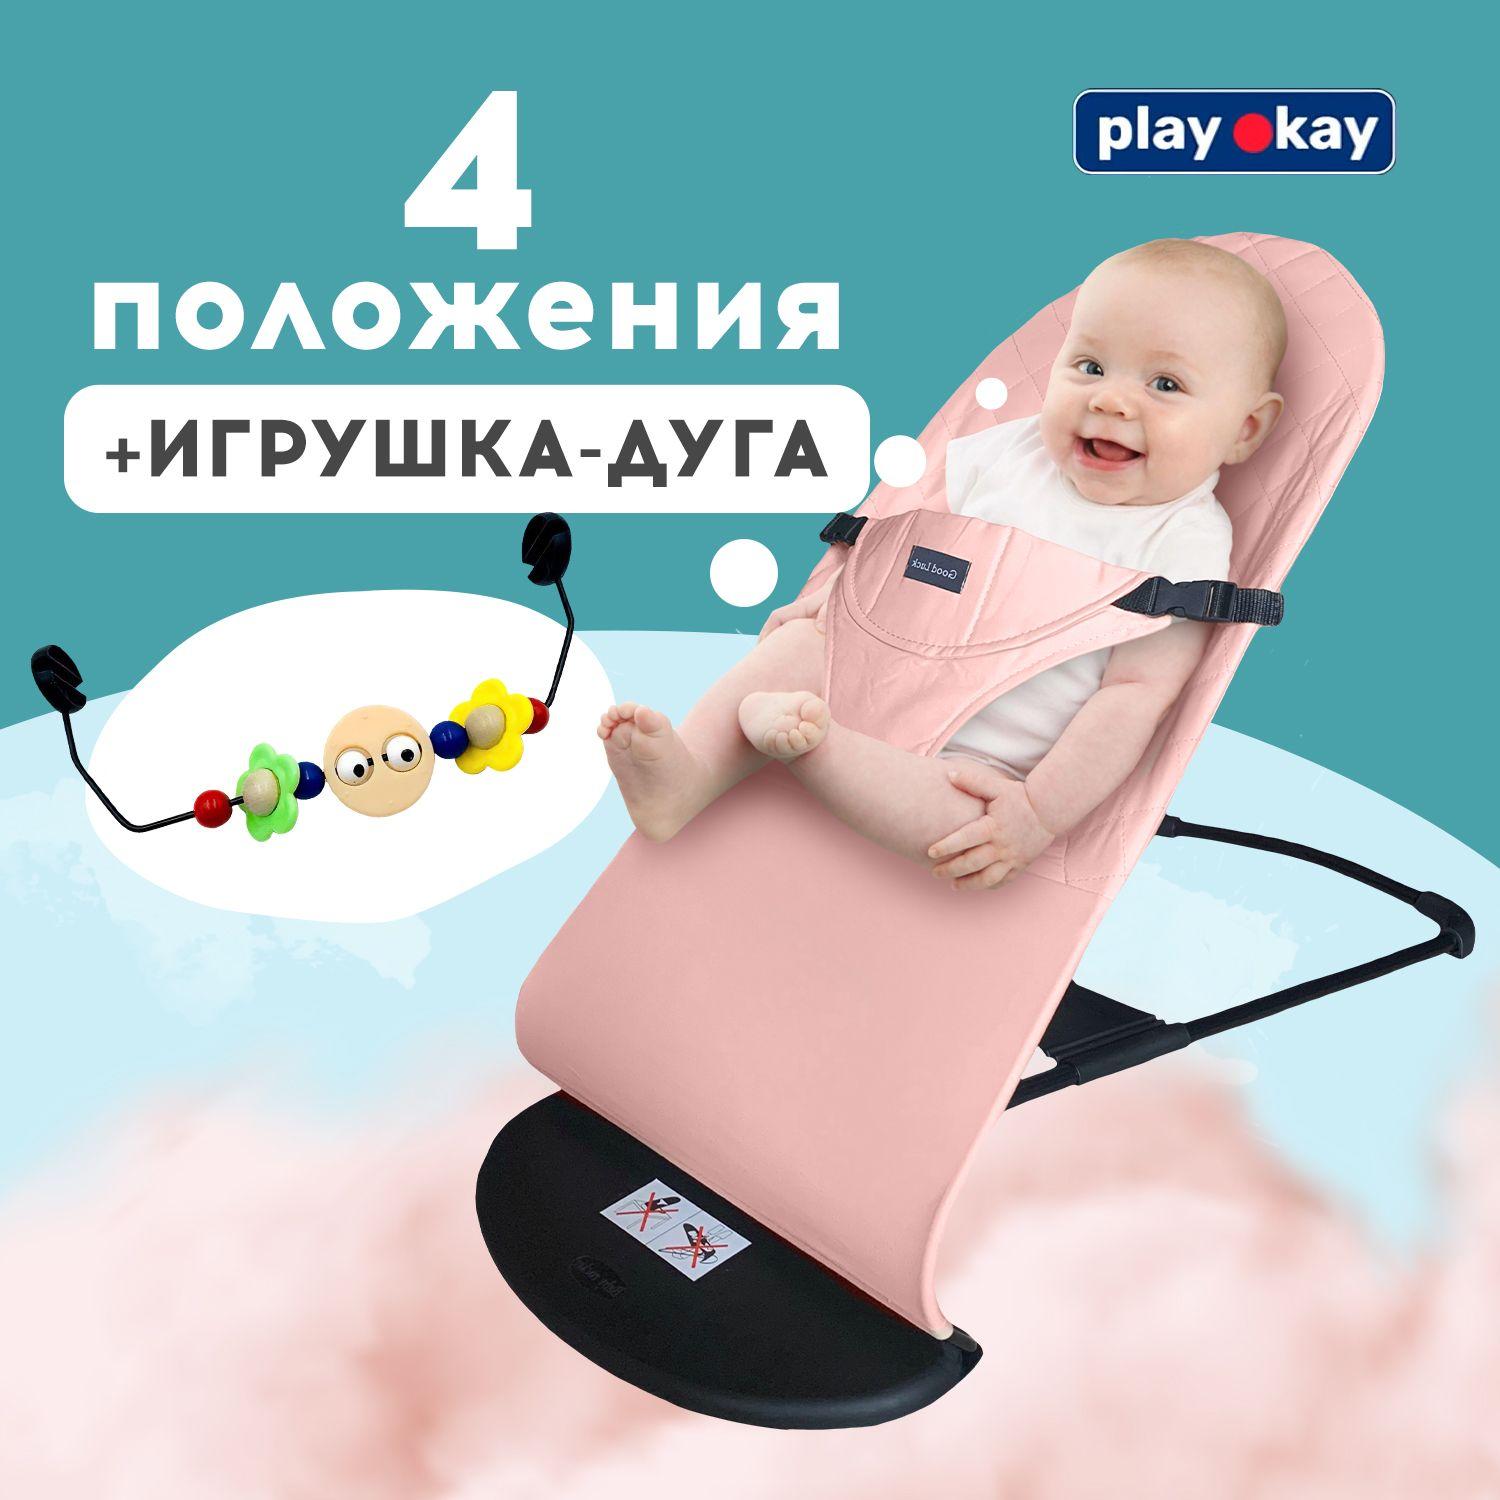 Шезлонг для новорожденных, детское кресло качалка Play Okay с развивающей игрушкой дугой малышу до 15 кг, Материал: тарилен, метал, полипропилен / 78 х 40 х 56 см, Розовый